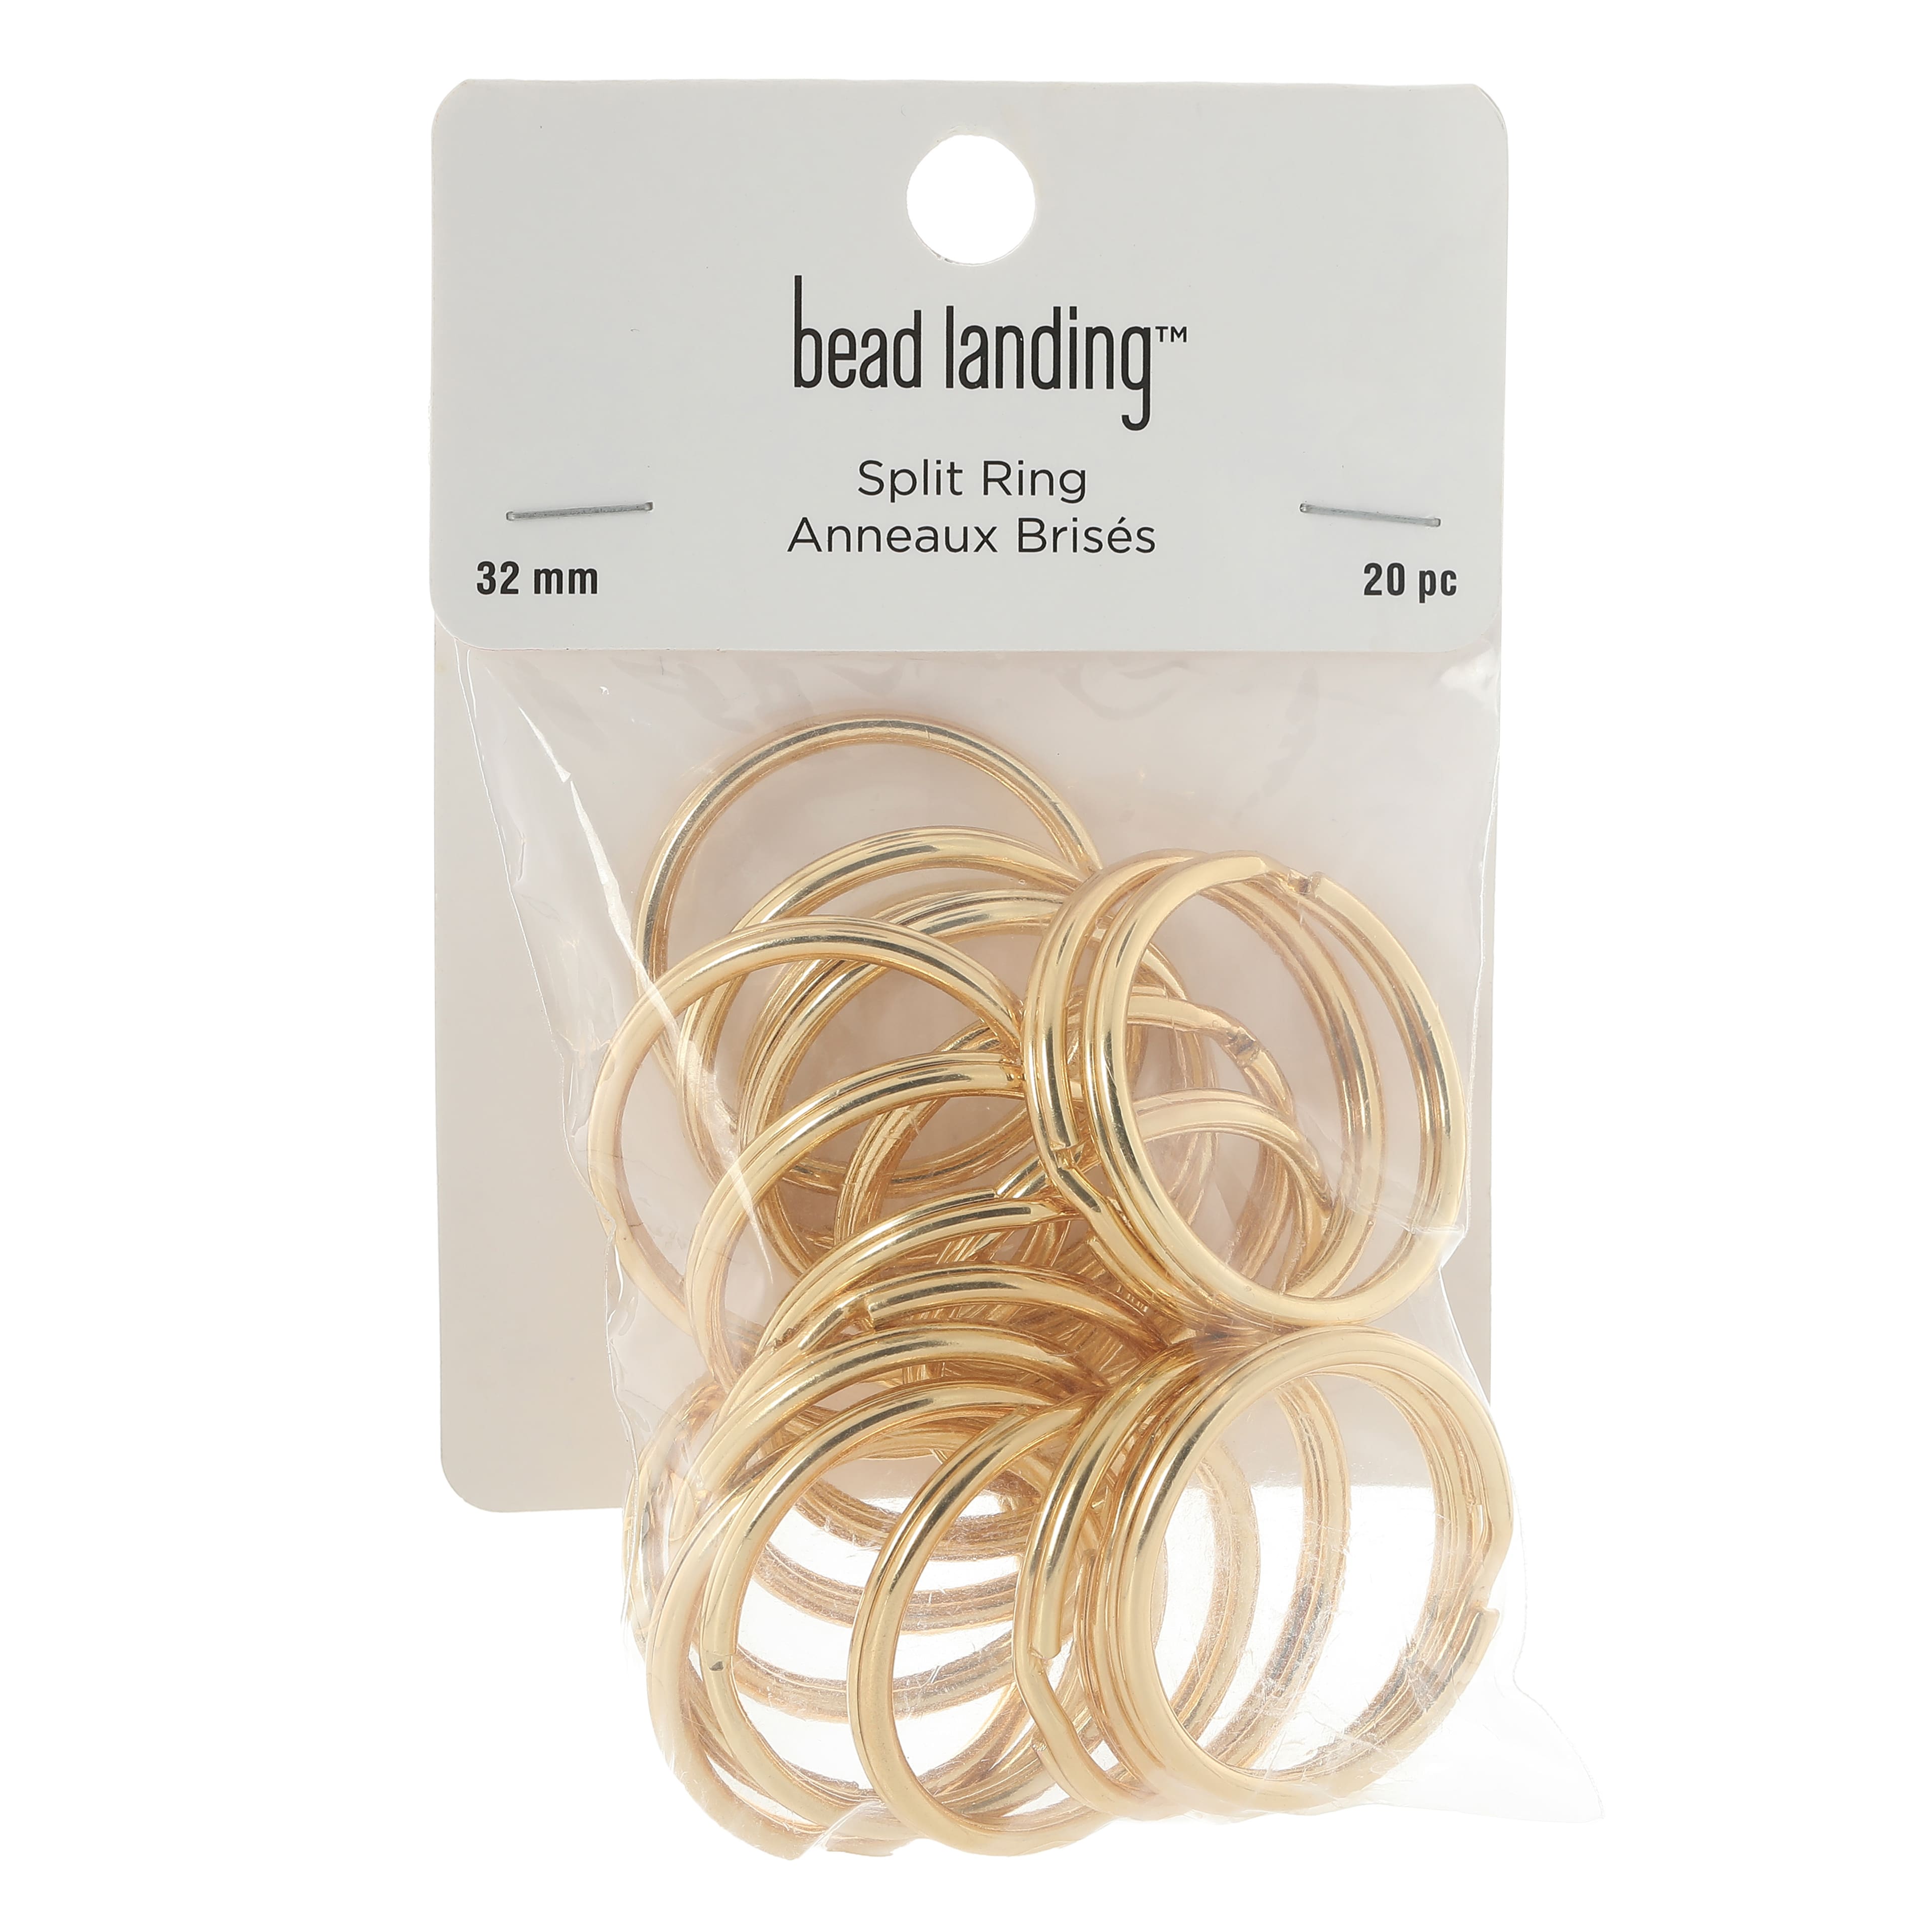 12 Packs: 20 ct. (240 total) 32mm Split Rings by Bead Landing&#x2122;